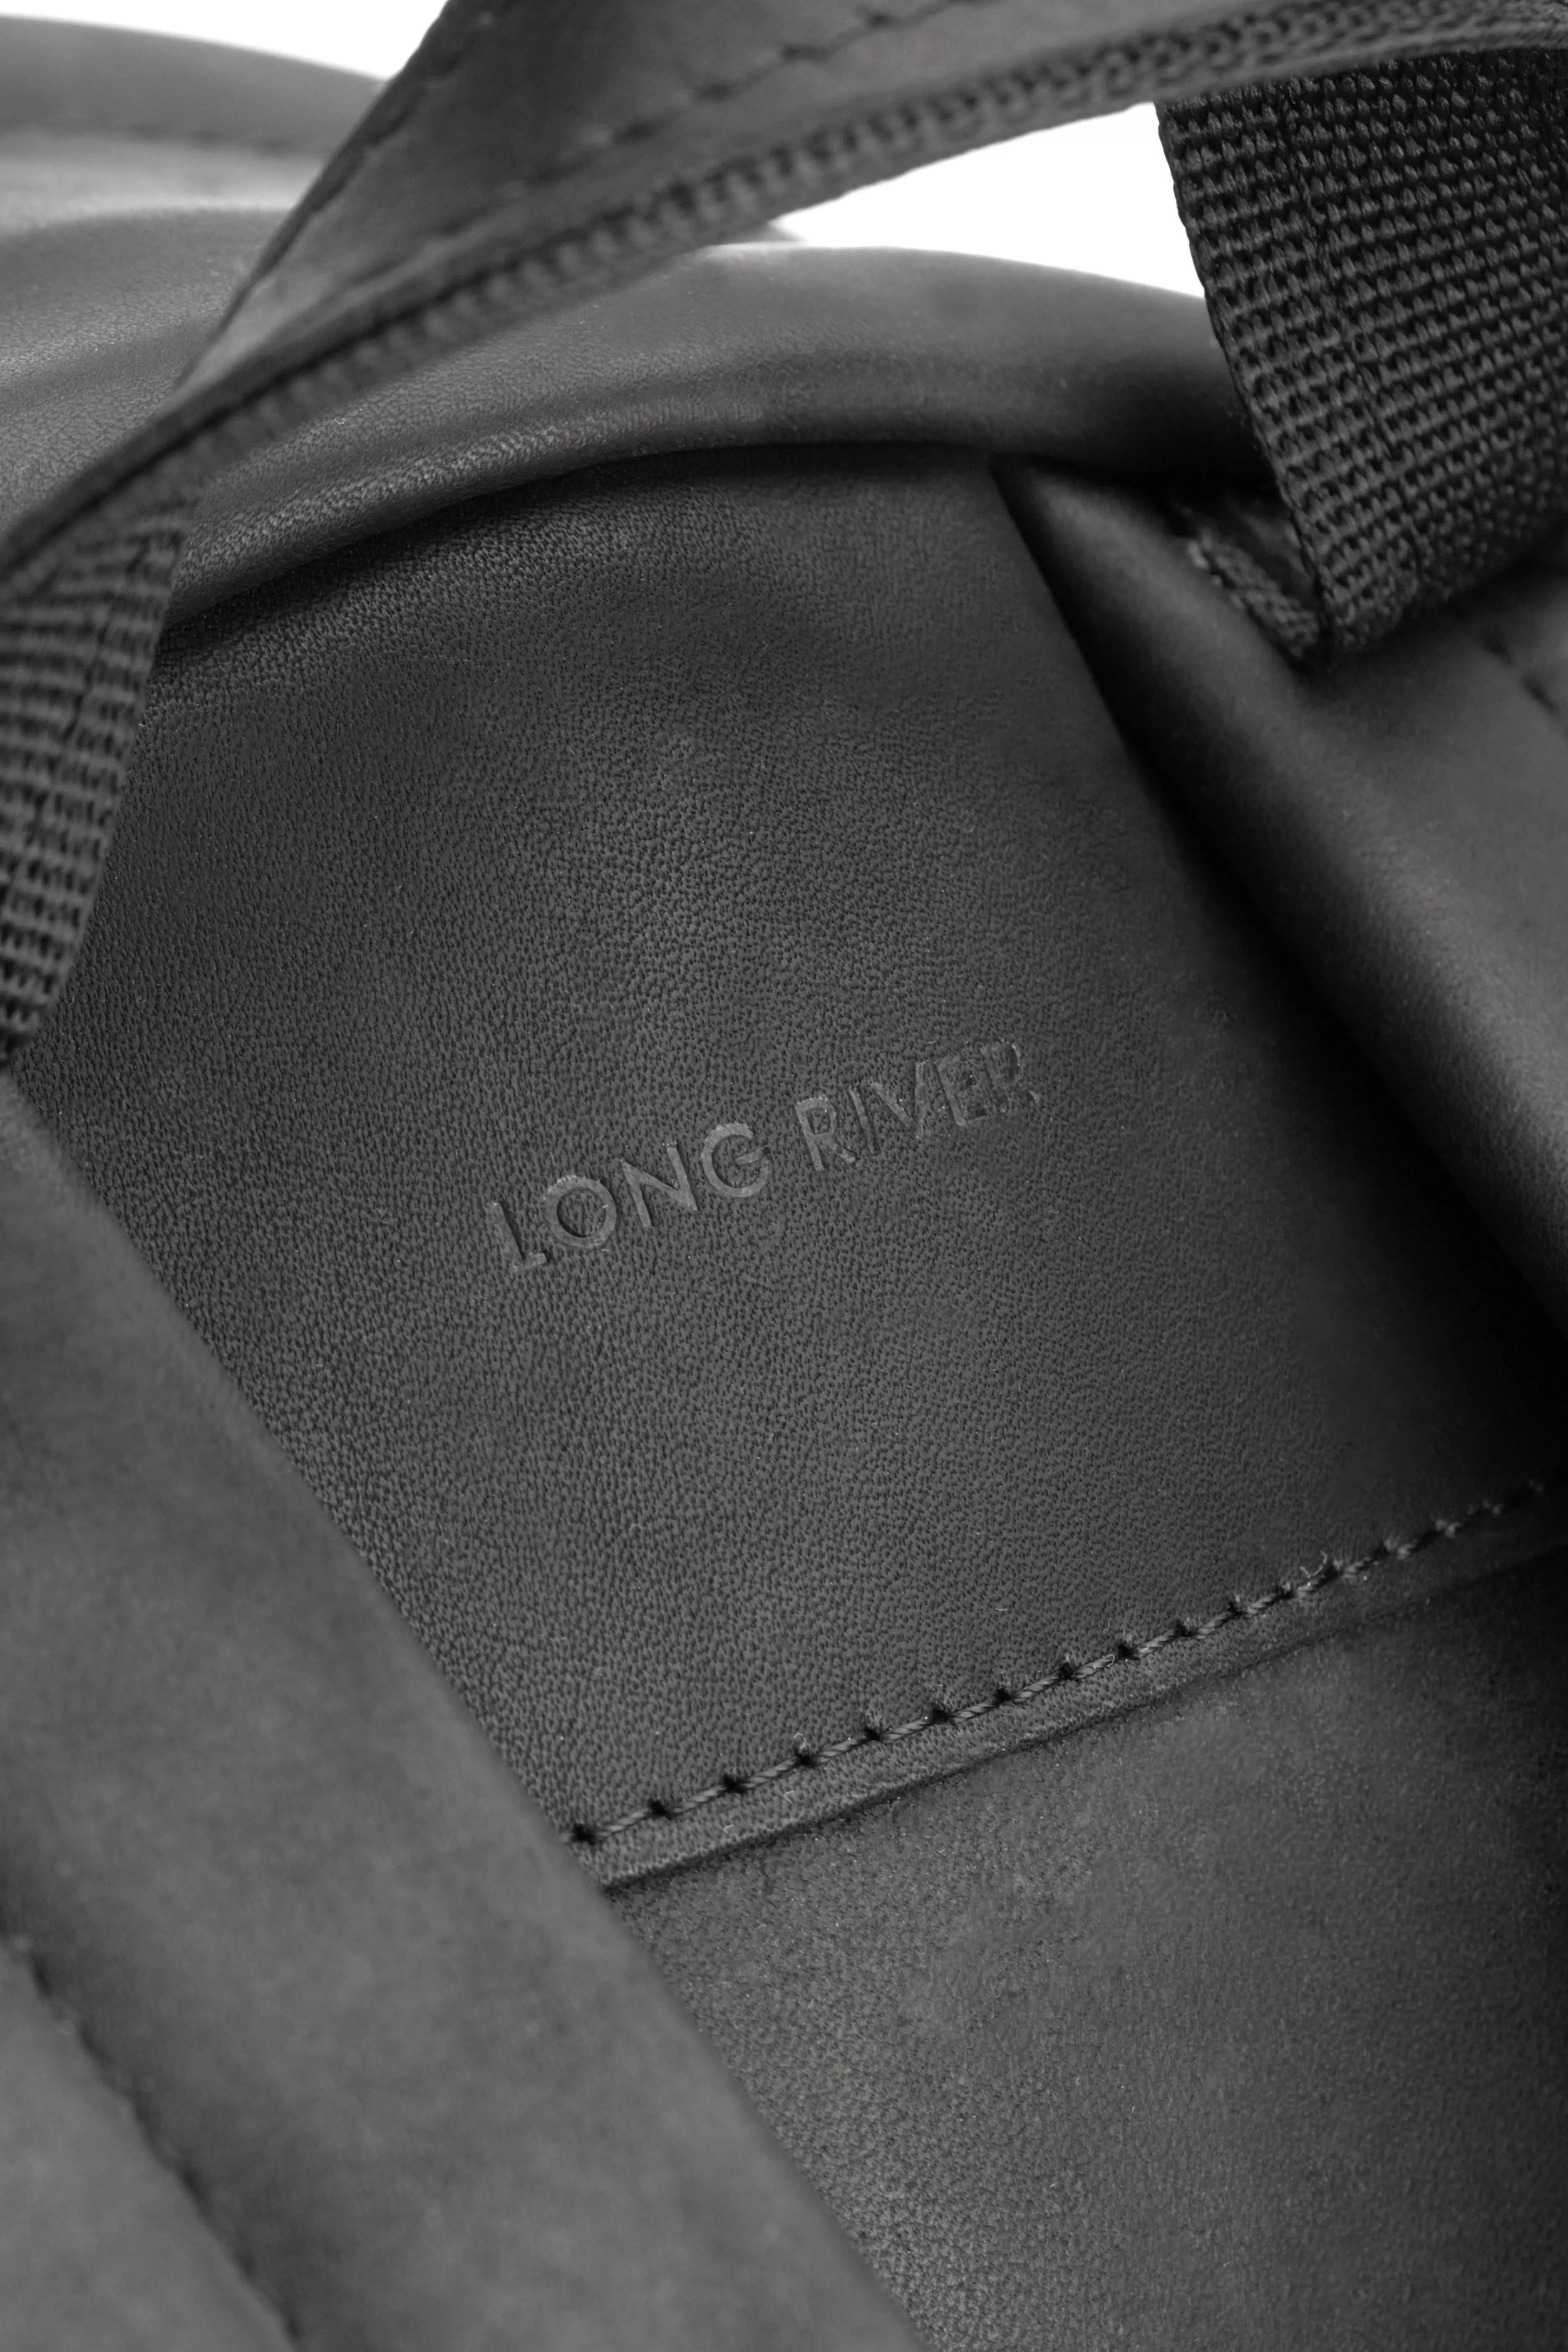 Long River ручка на рюкзаке